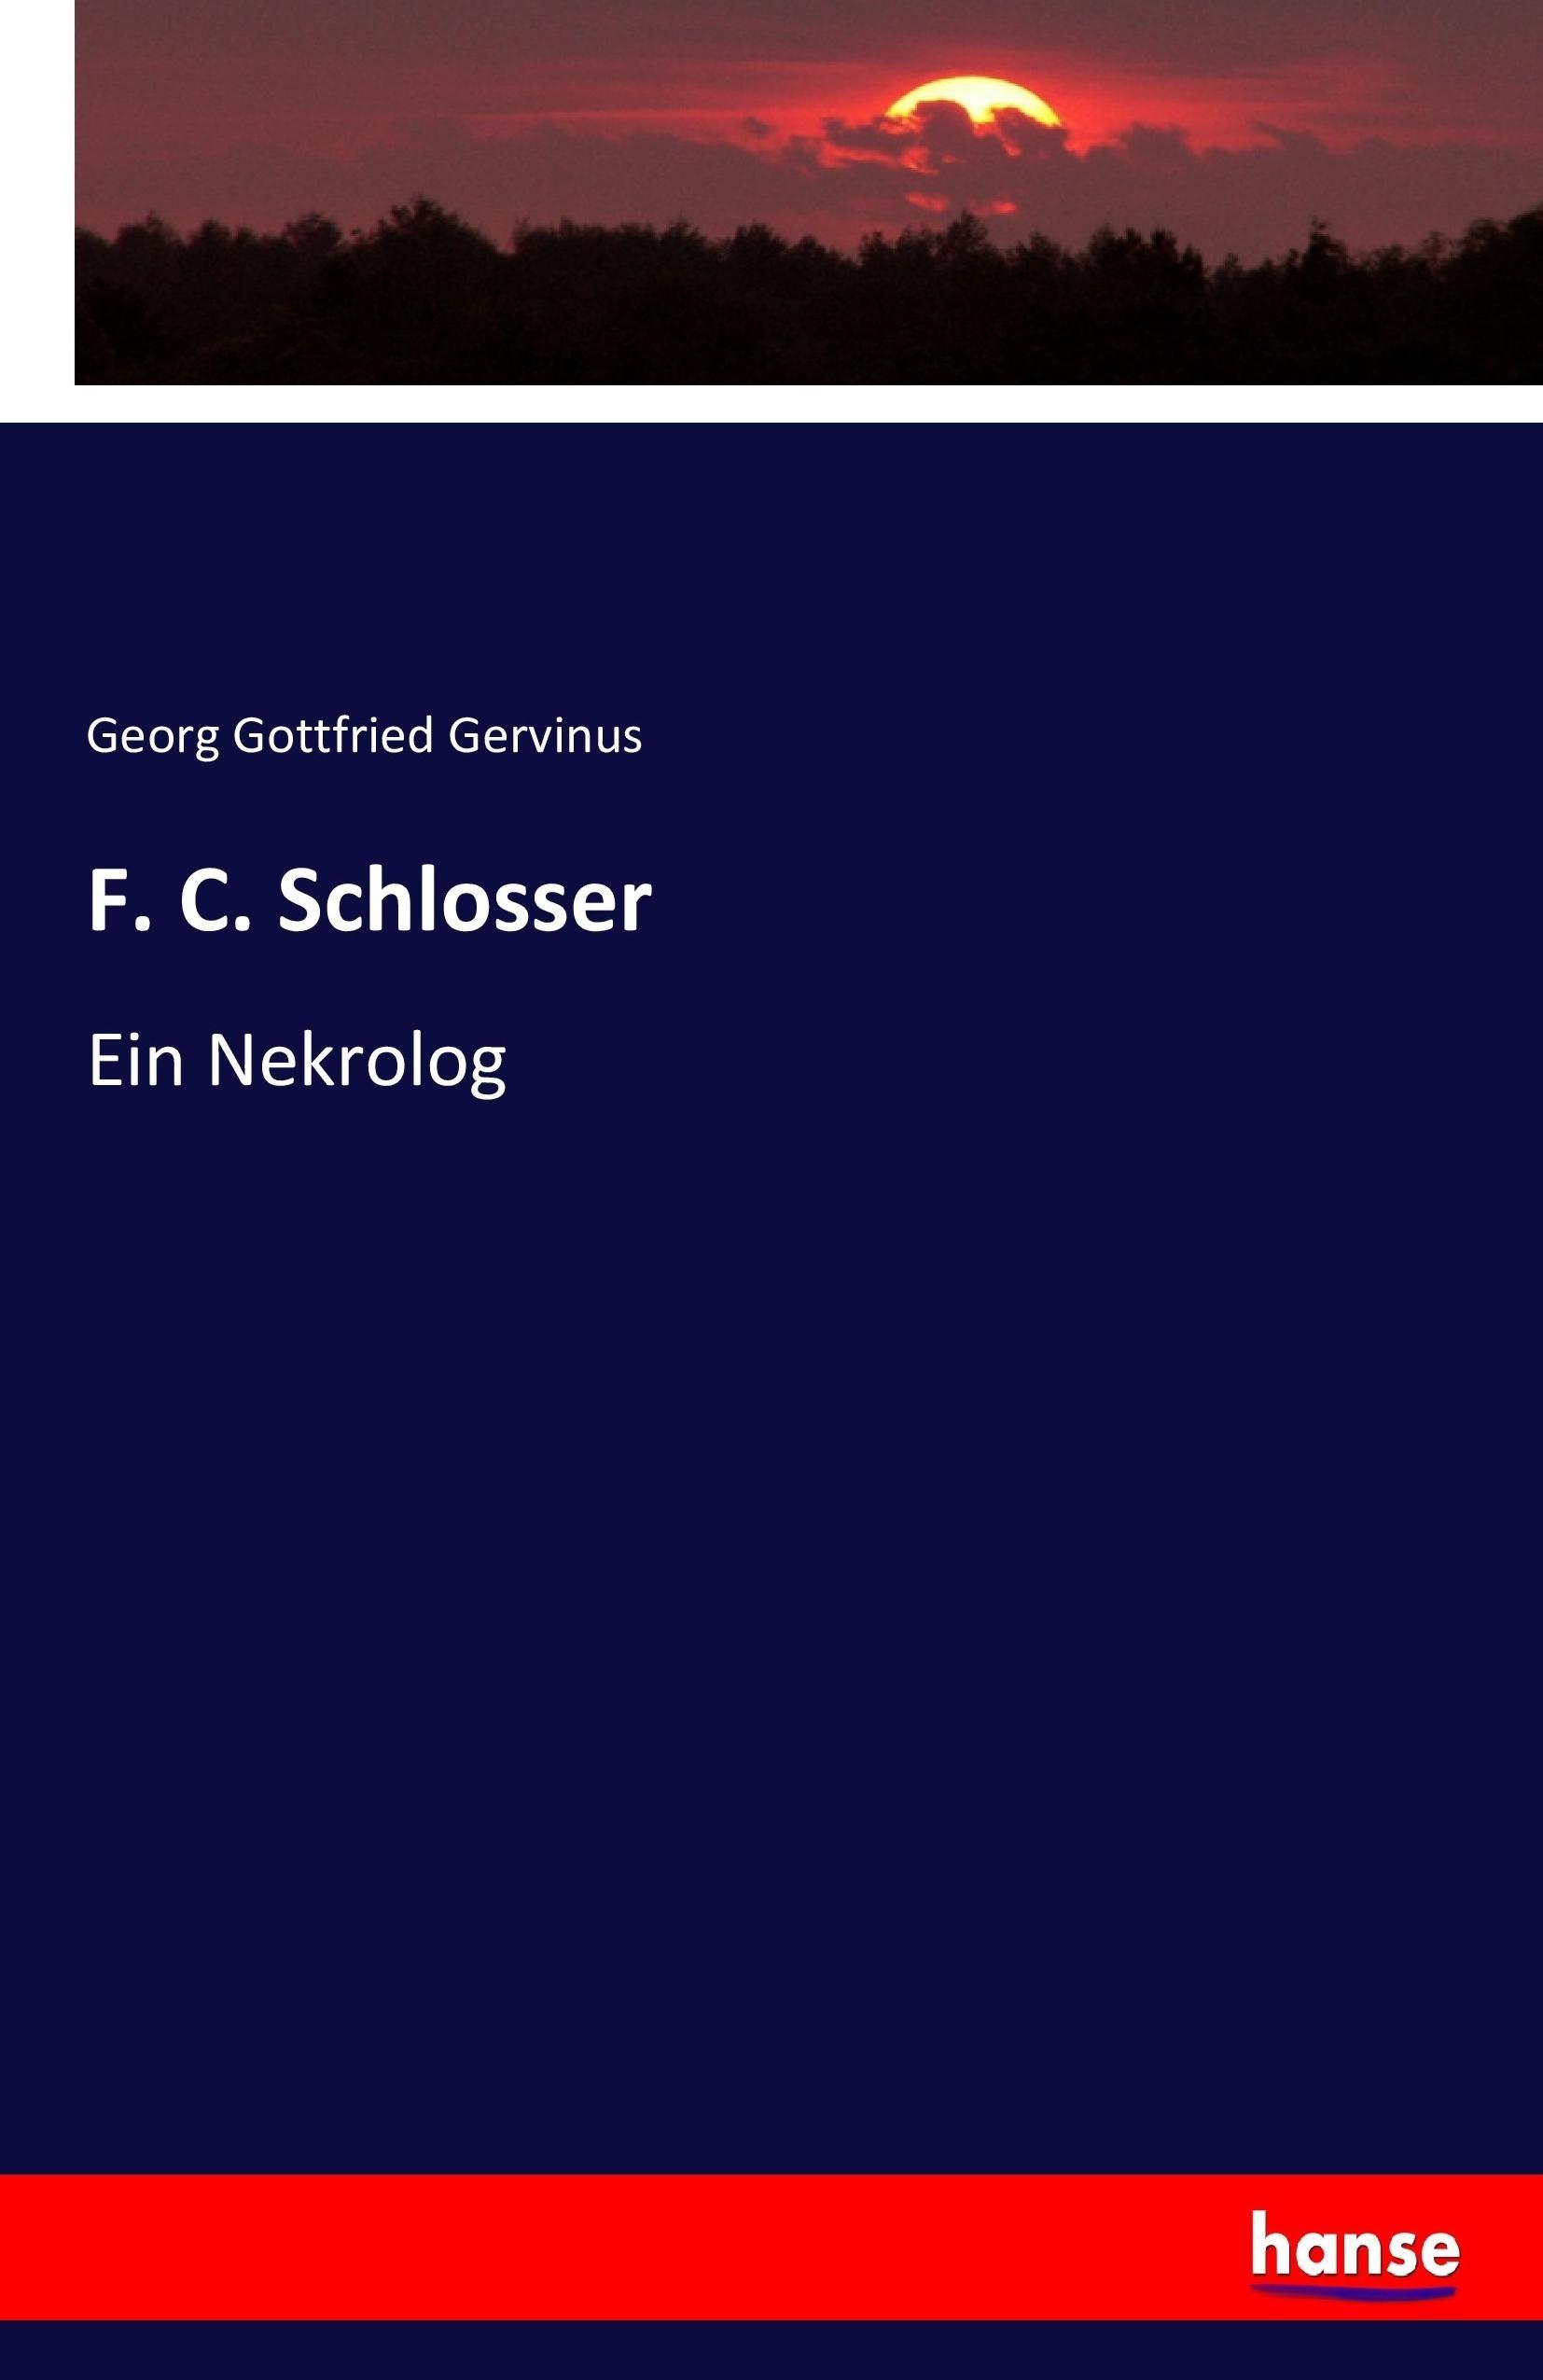 F. C. Schlosser | Ein Nekrolog | Georg Gottfried Gervinus | Taschenbuch | Paperback | 88 S. | Deutsch | 2017 | hansebooks | EAN 9783743698451 - Gervinus, Georg Gottfried